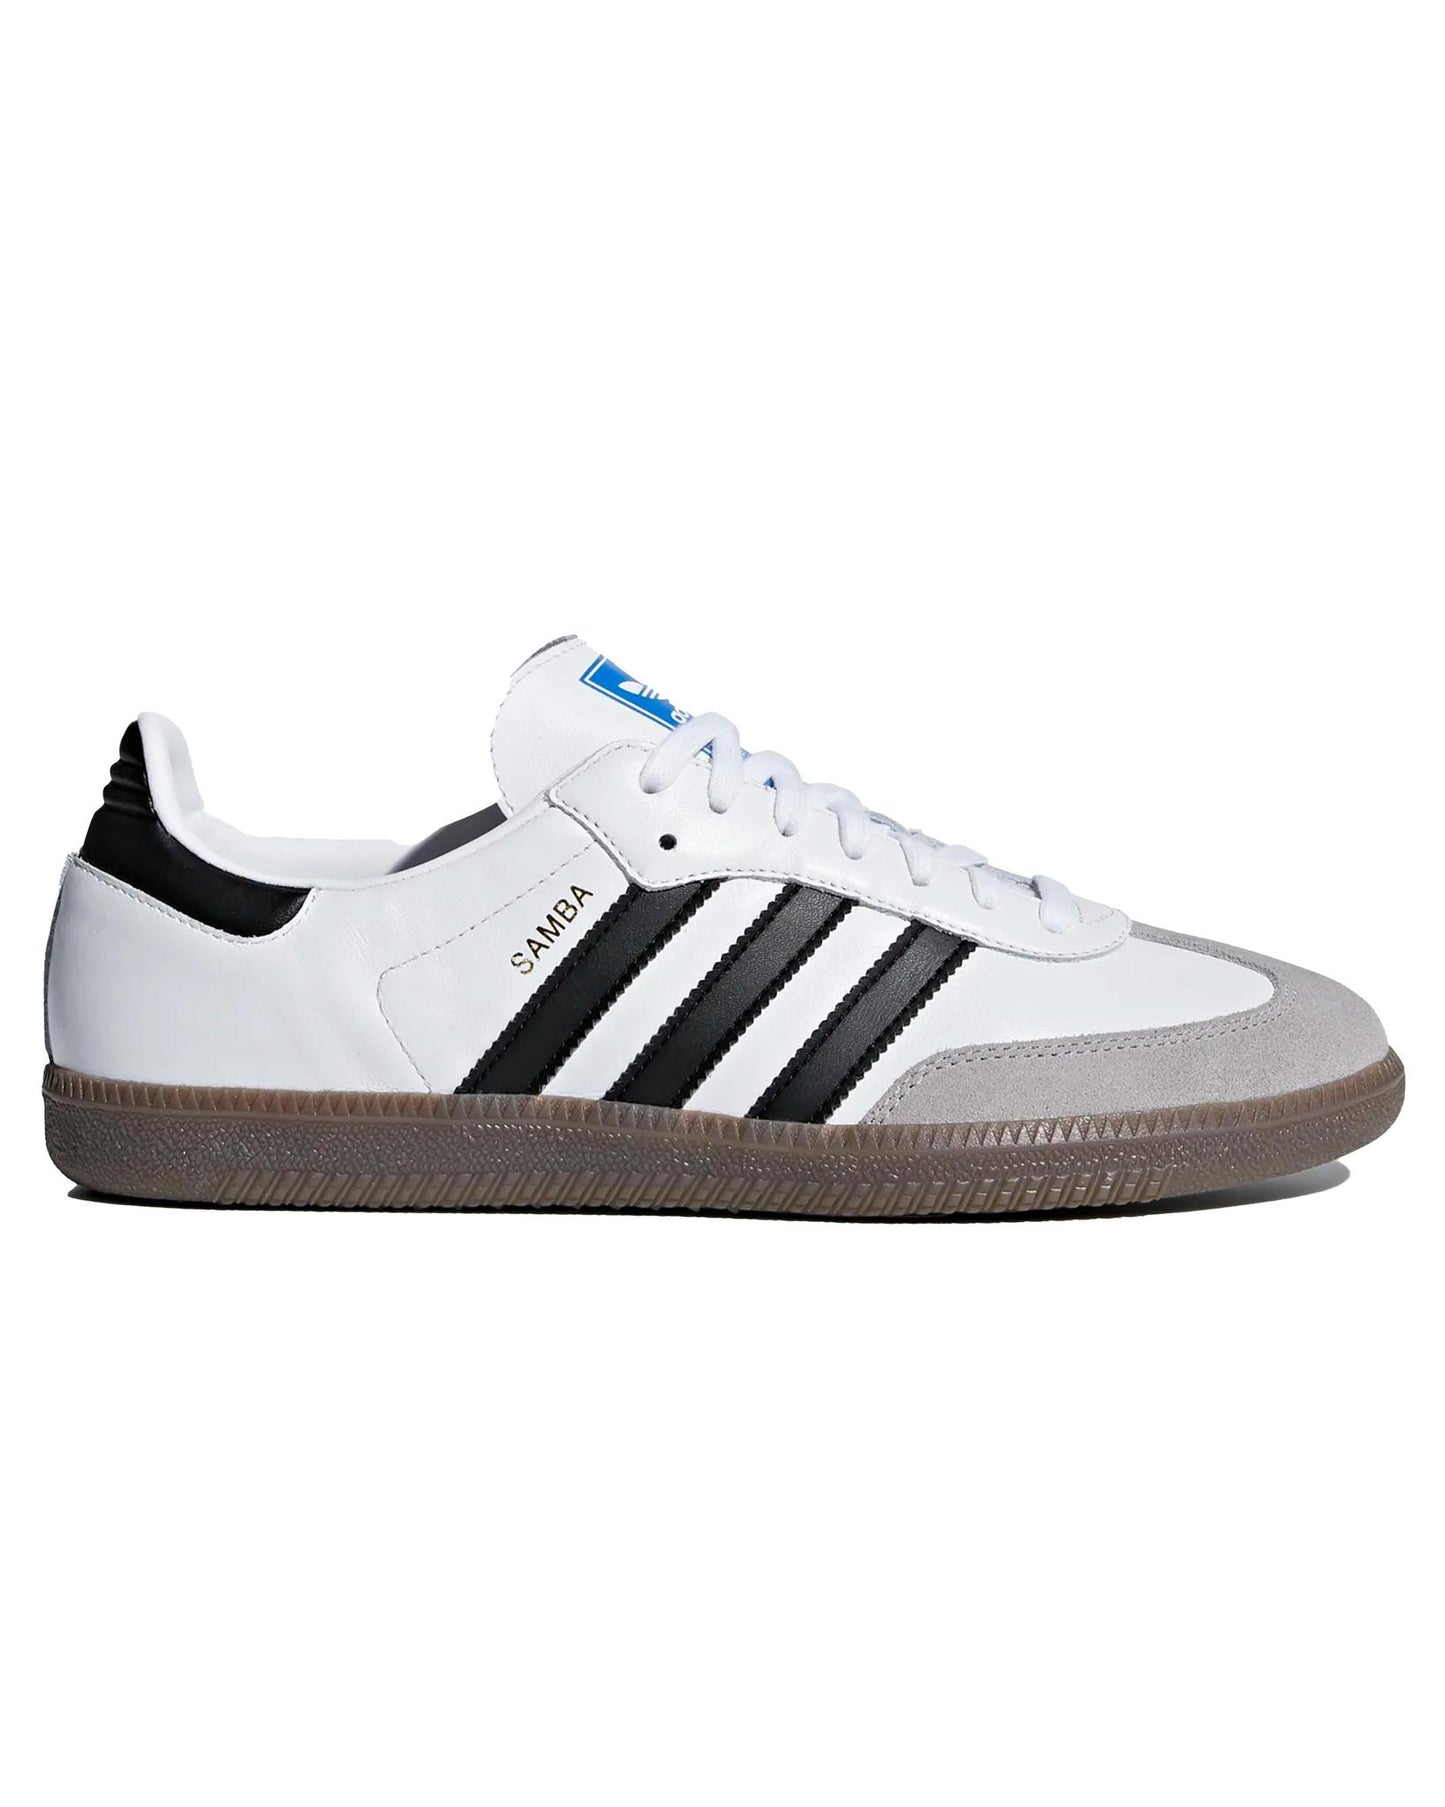 Adidas Samba OG White | STASHED